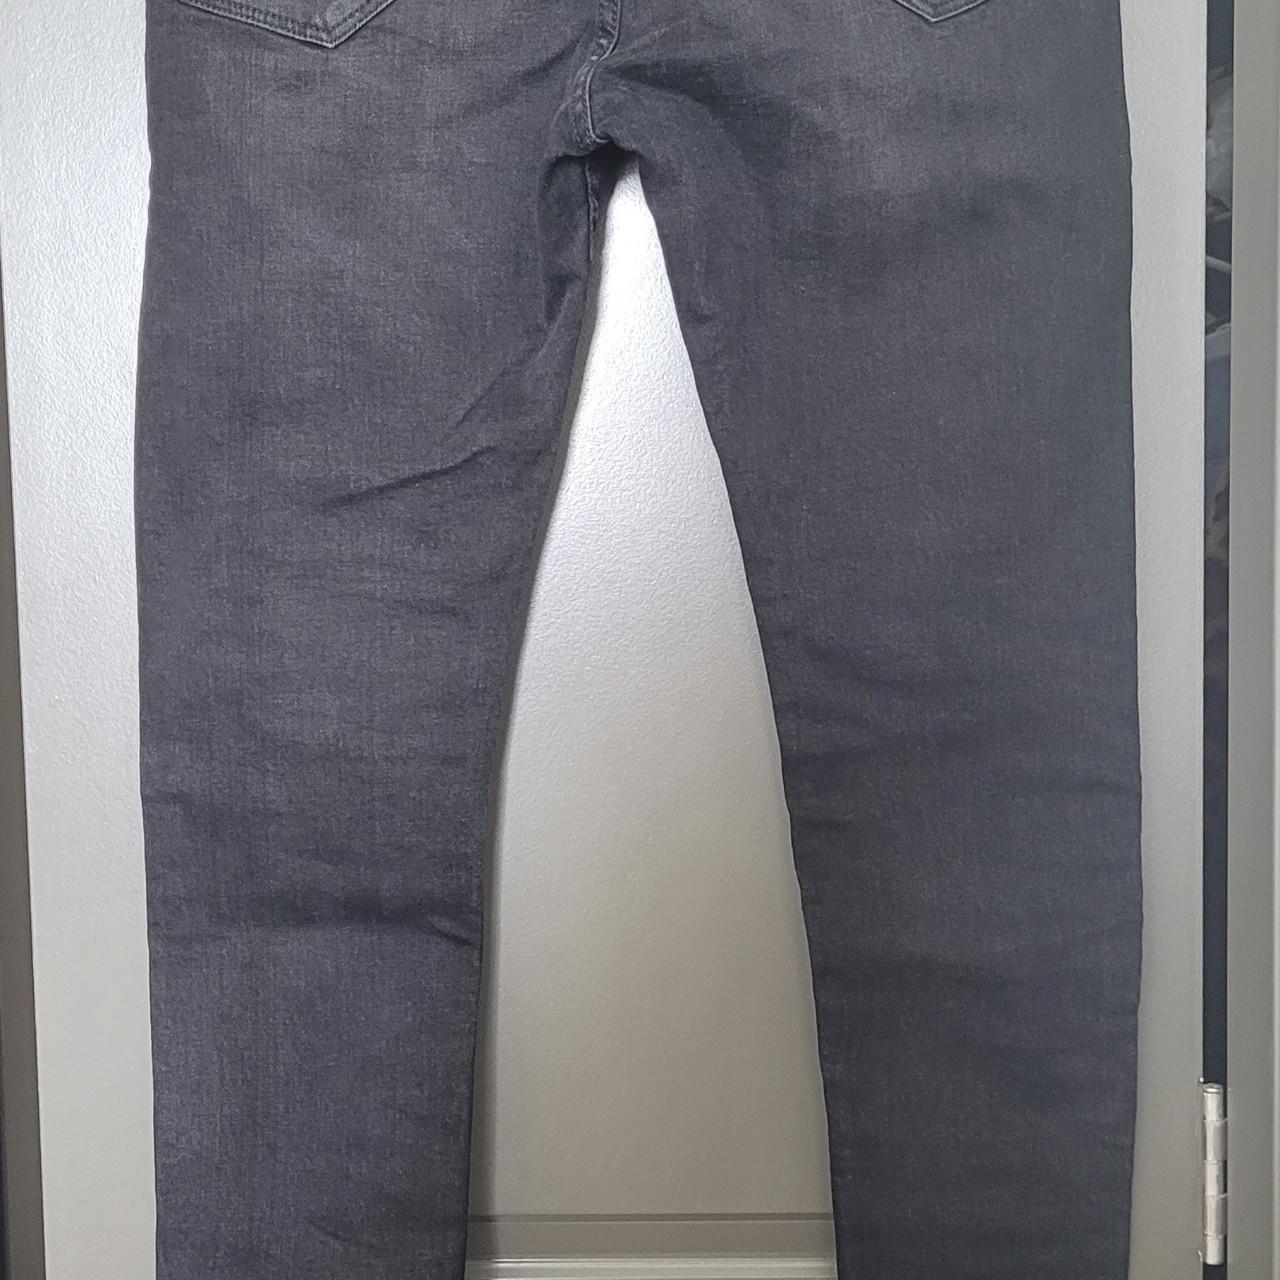 Zara - Skinny Jeans - Charcoal - Men